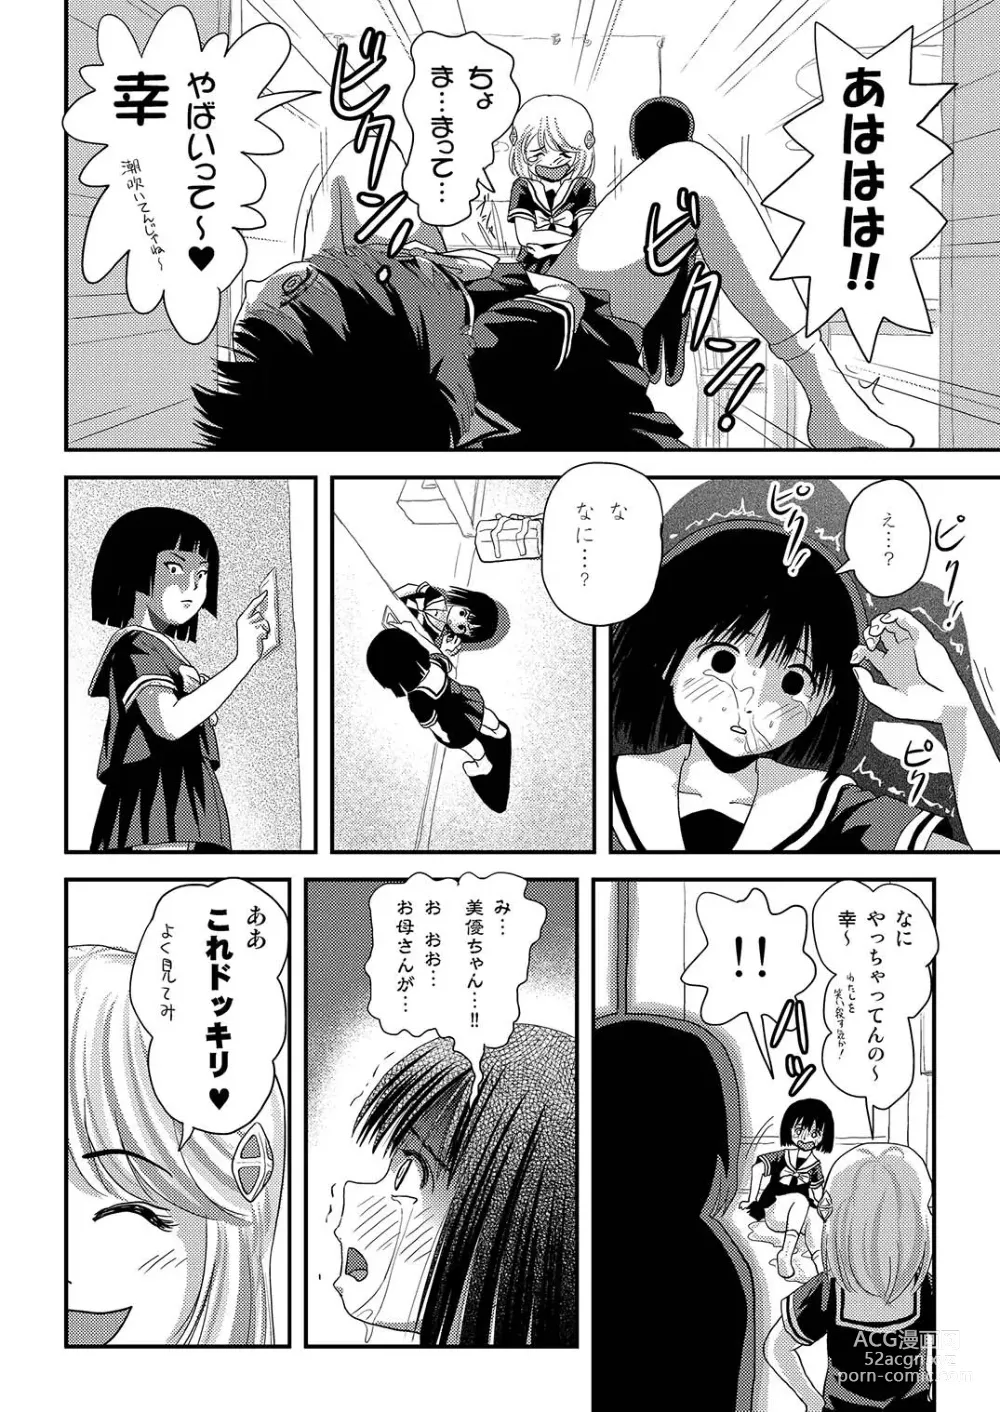 Page 8 of doujinshi Sonna no zurui 2